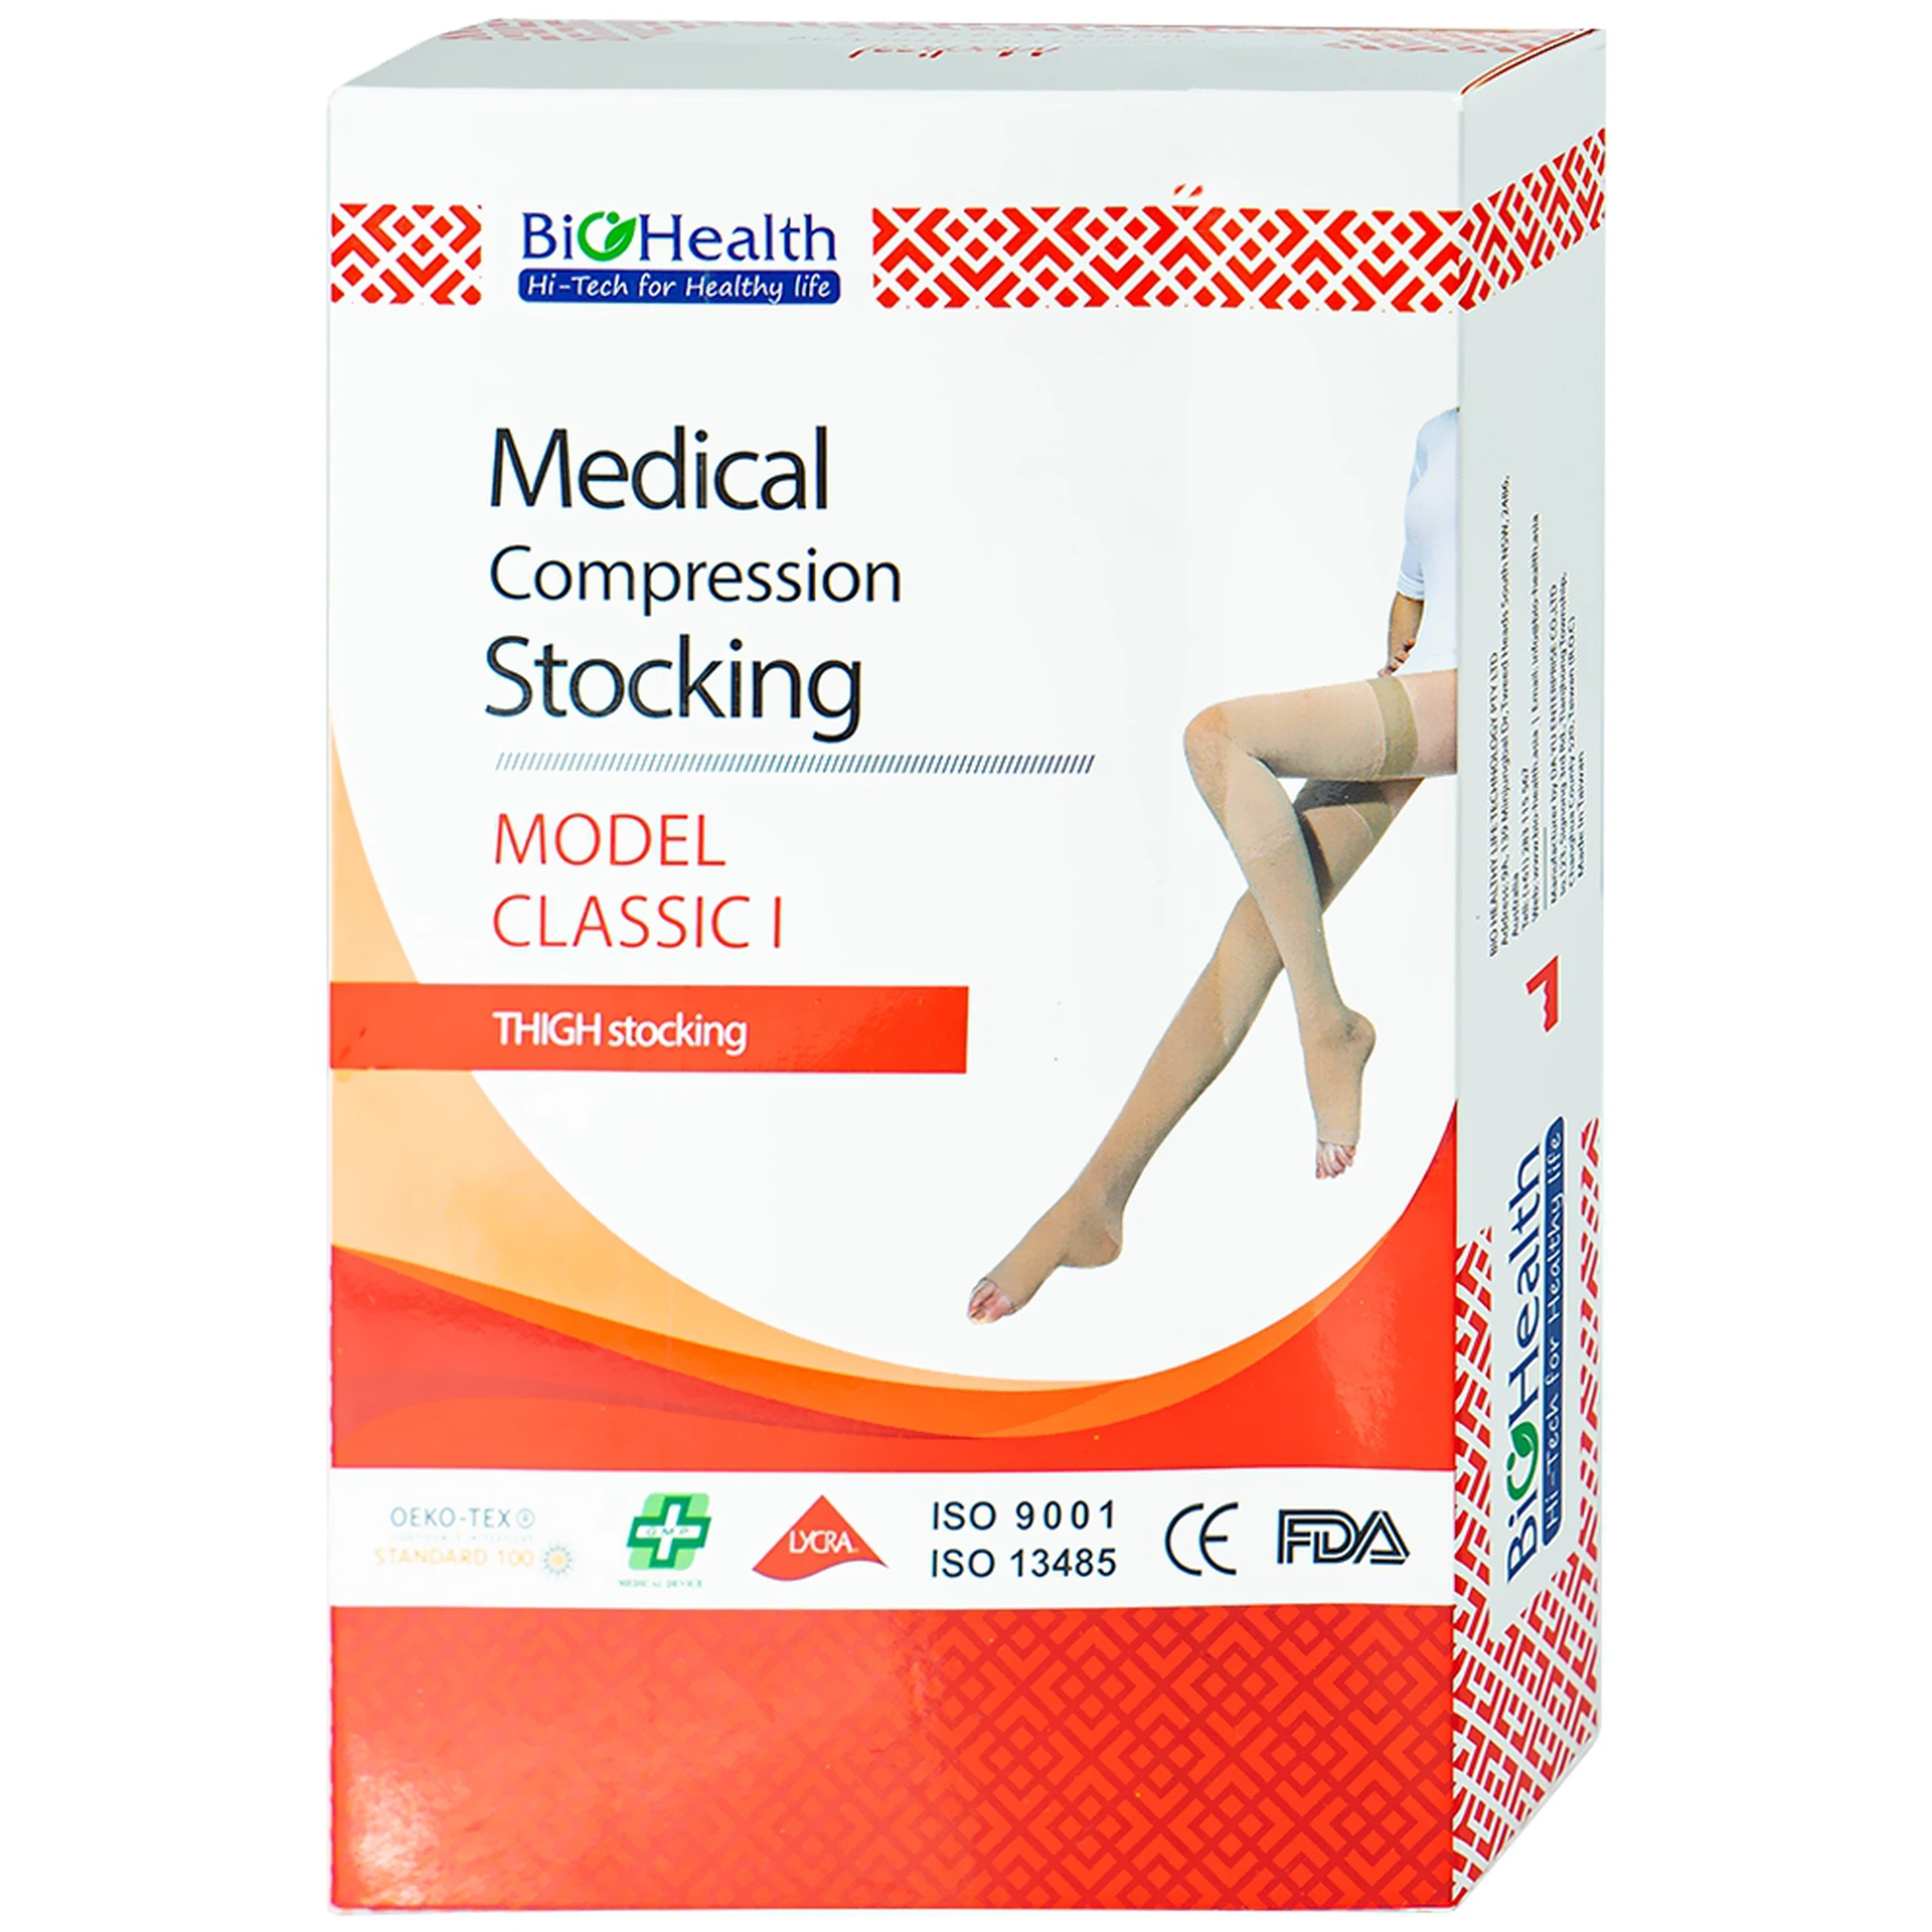 Vớ đùi y khoa Medical Compression Stocking Model Classis I size M Biohealth ngăn ngừa phù nề 